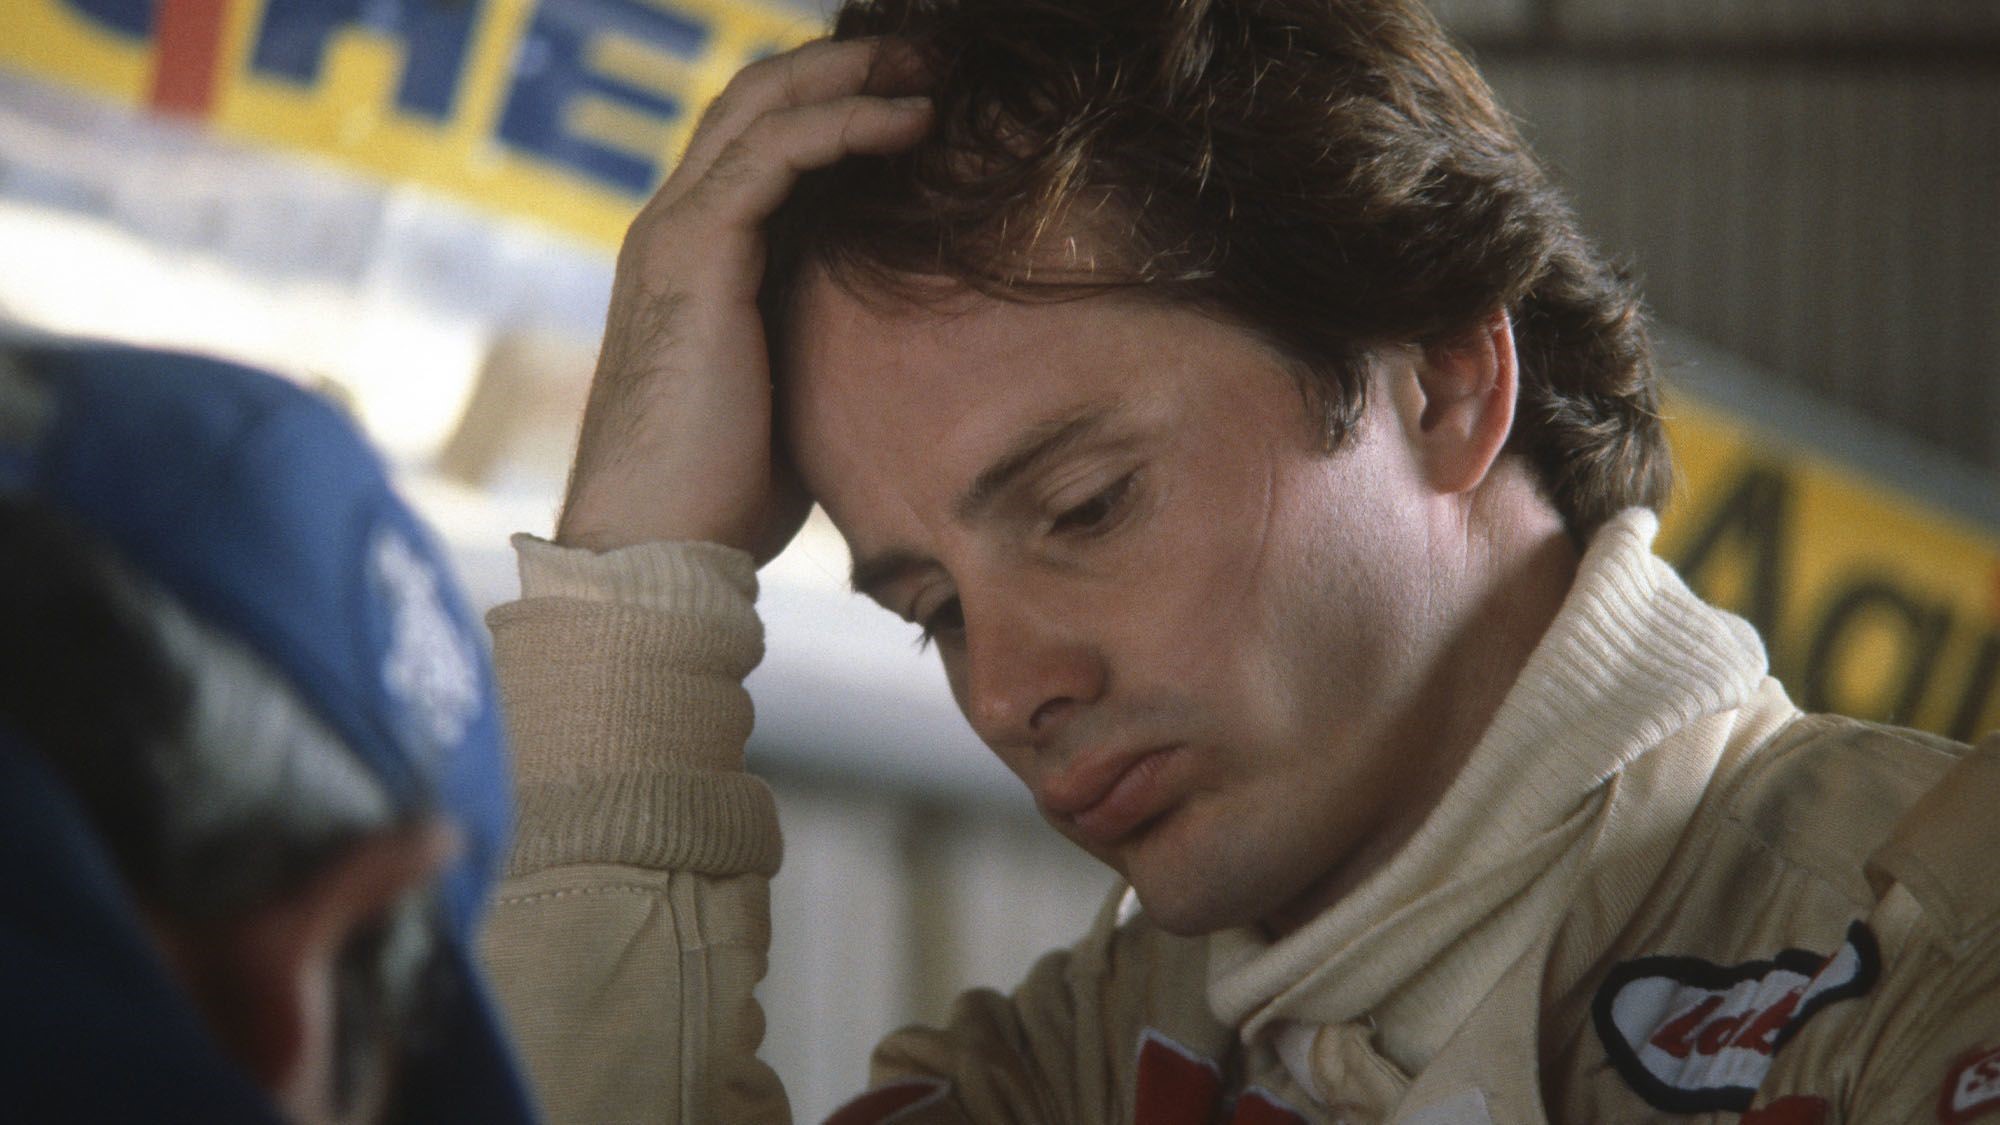 Gilles Villeneuve.